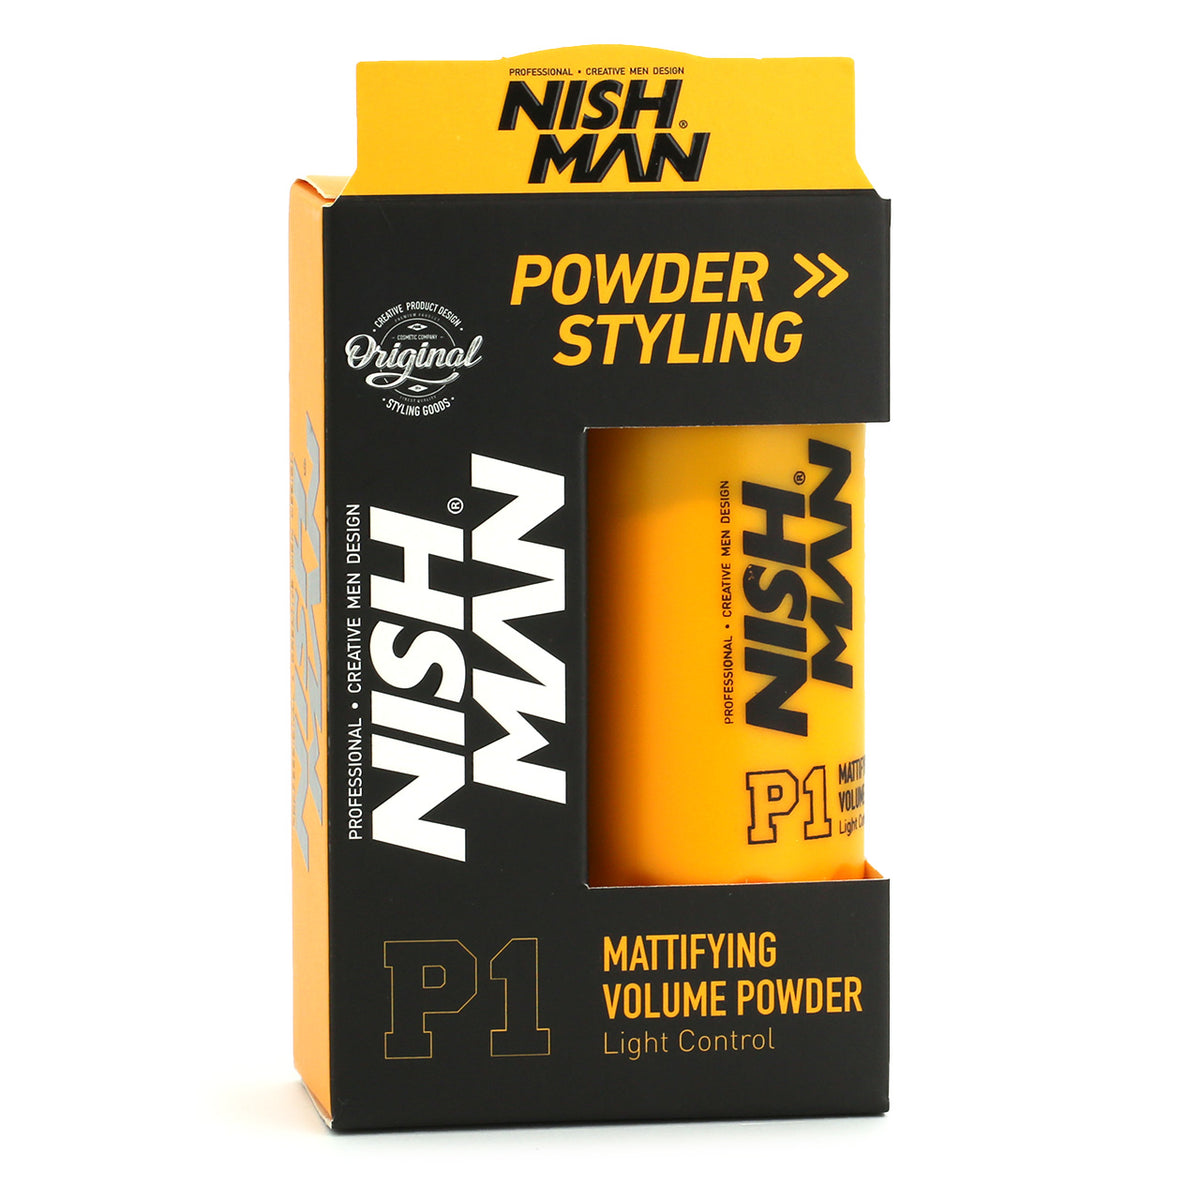 NishMan Mattifying Volume Powder in box